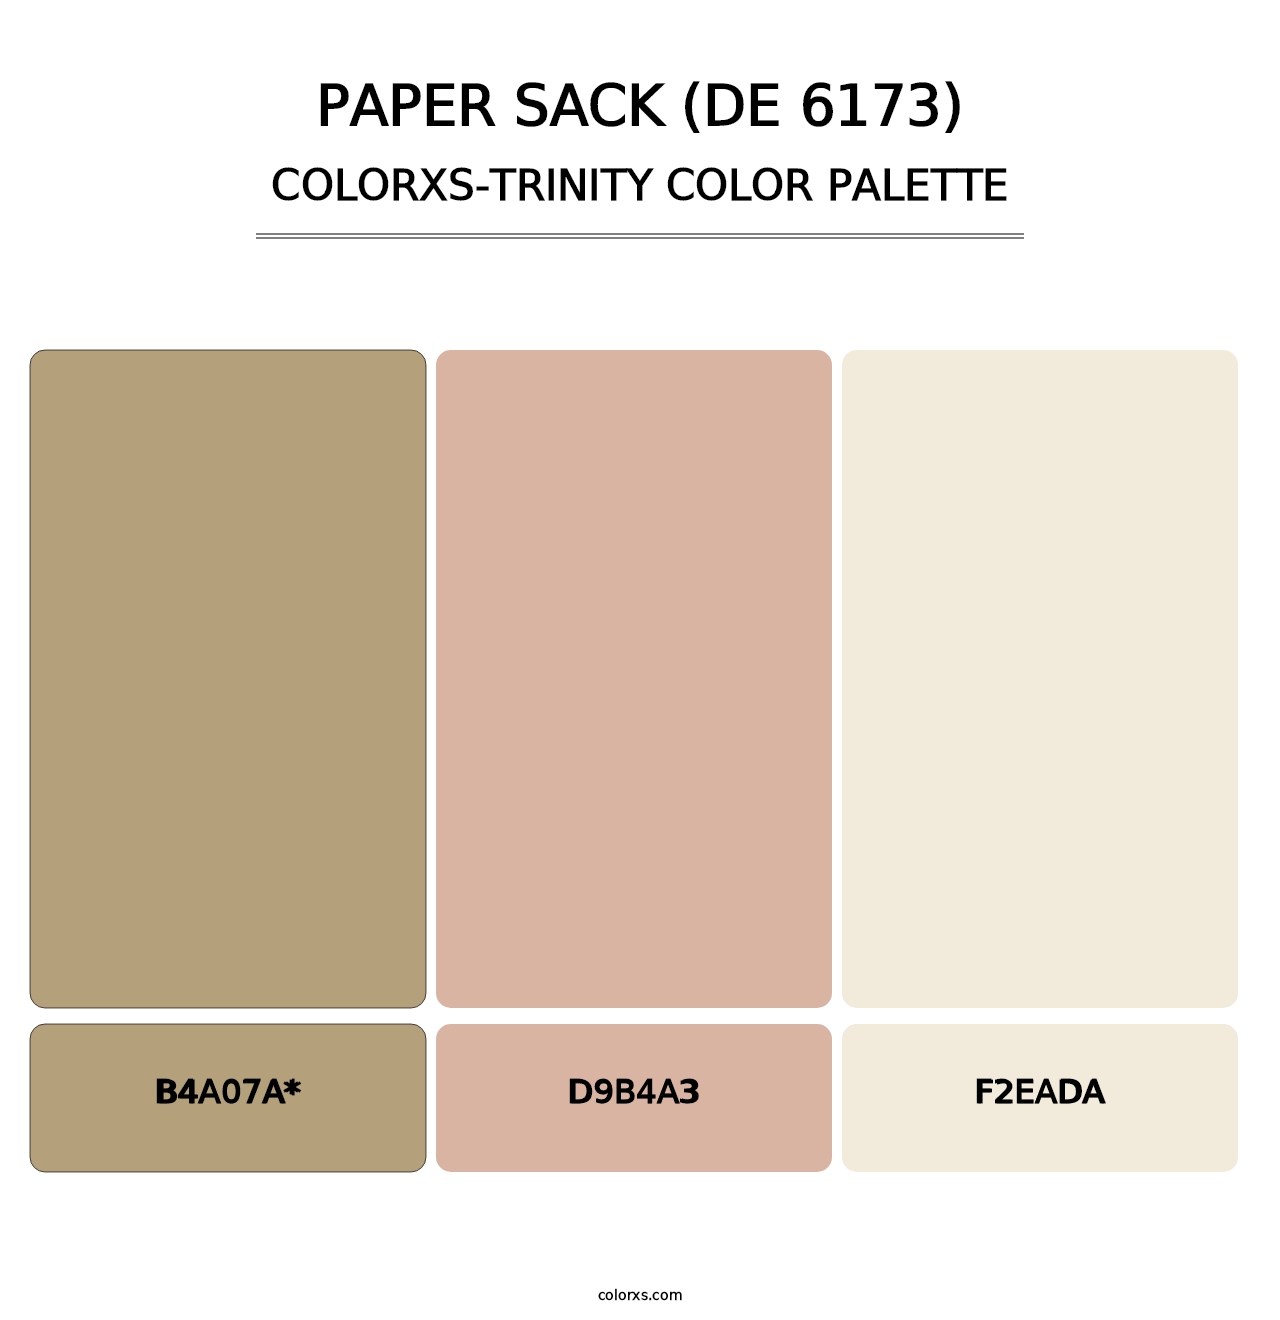 Paper Sack (DE 6173) - Colorxs Trinity Palette